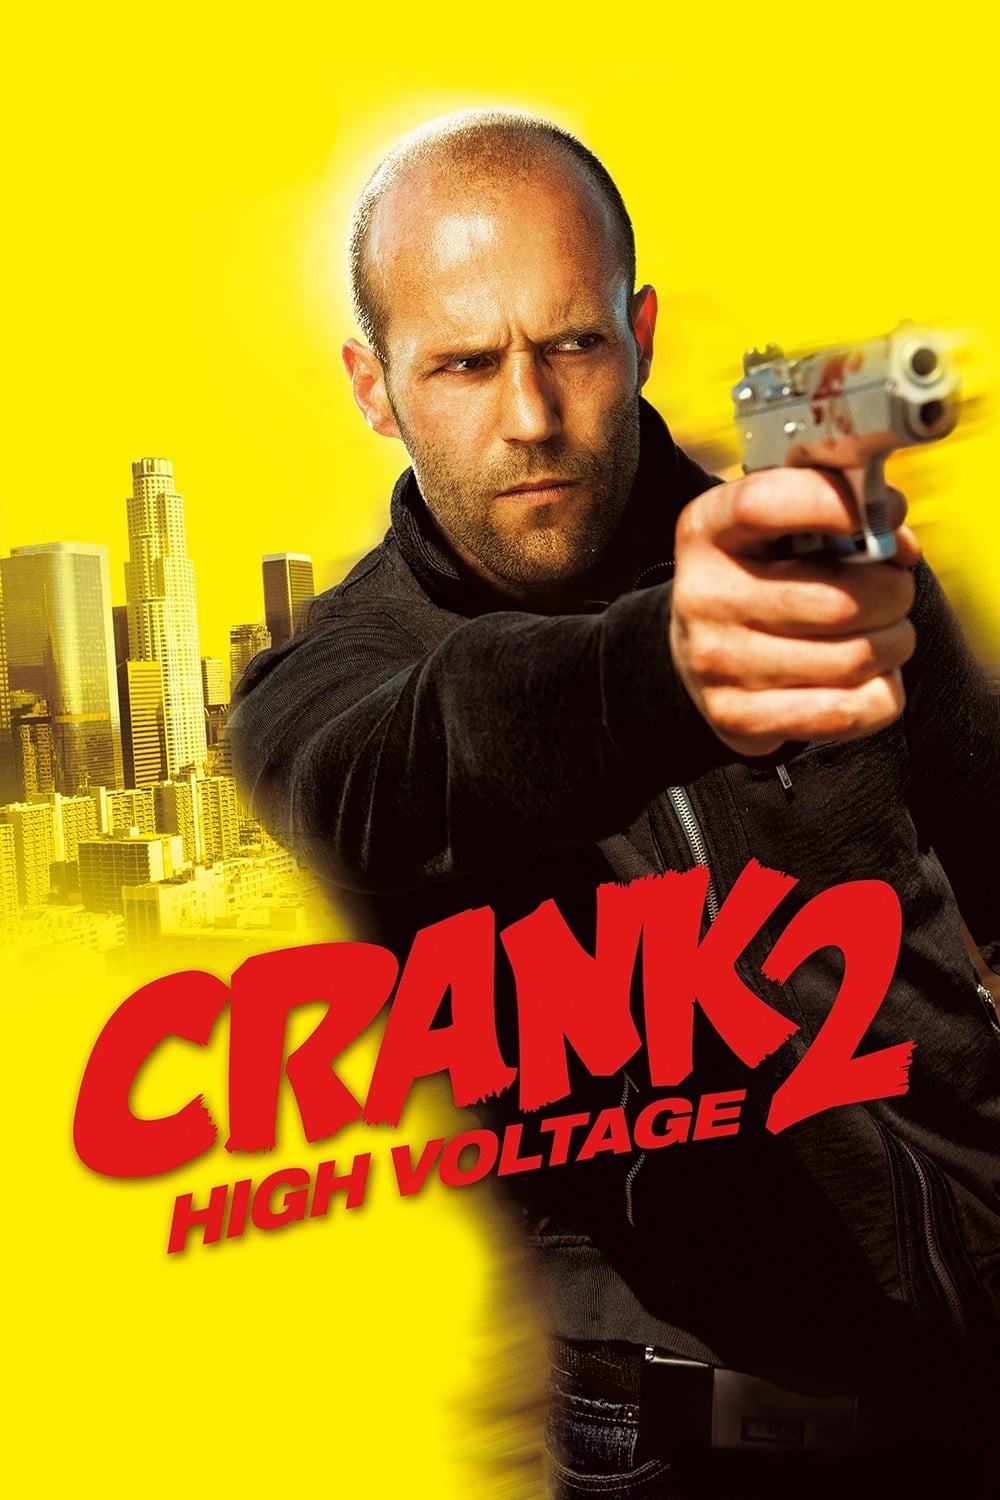 Plakat von "Crank 2 - High Voltage"